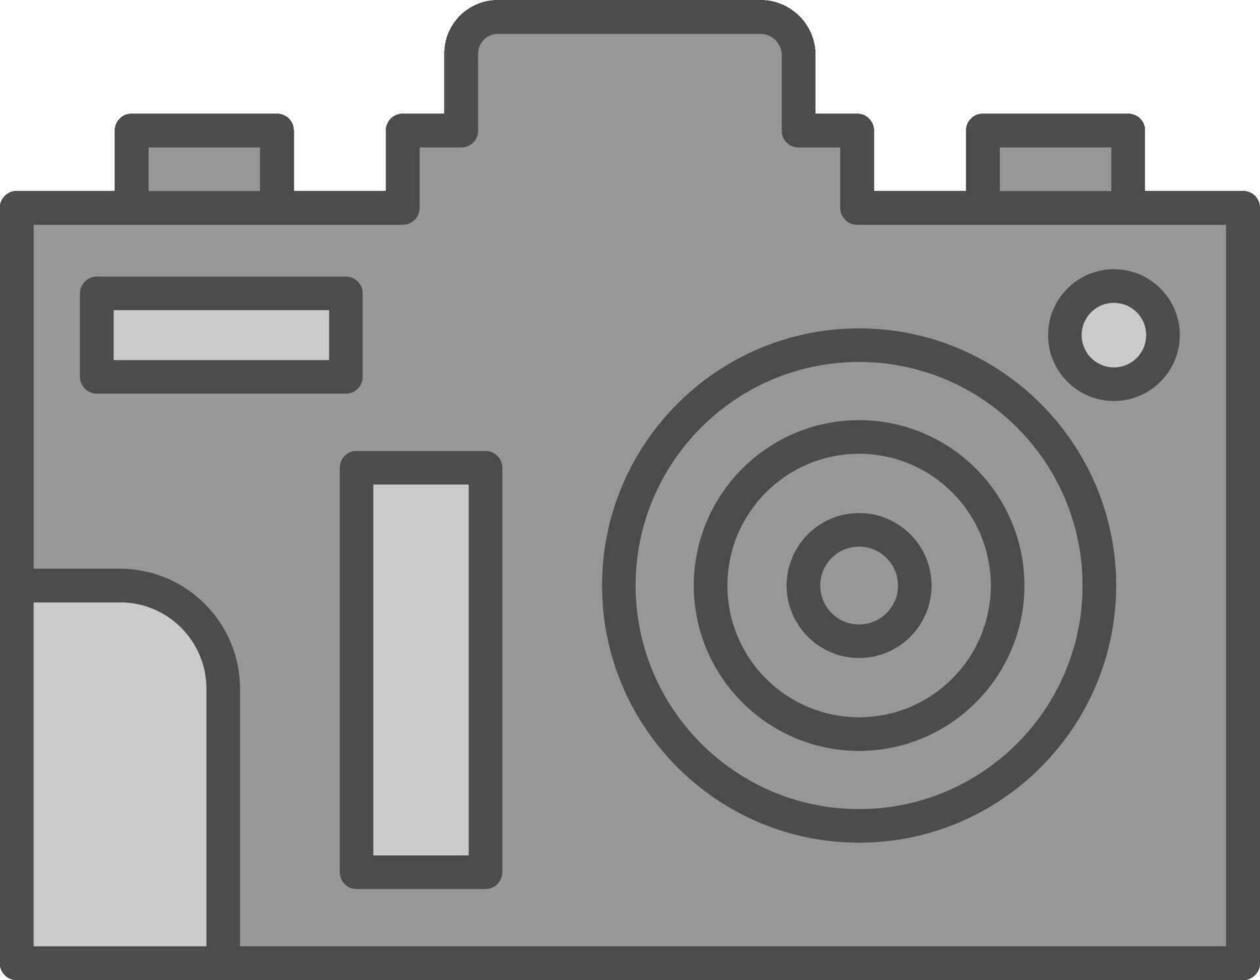 Fotokamera-Vektor-Icon-Design vektor